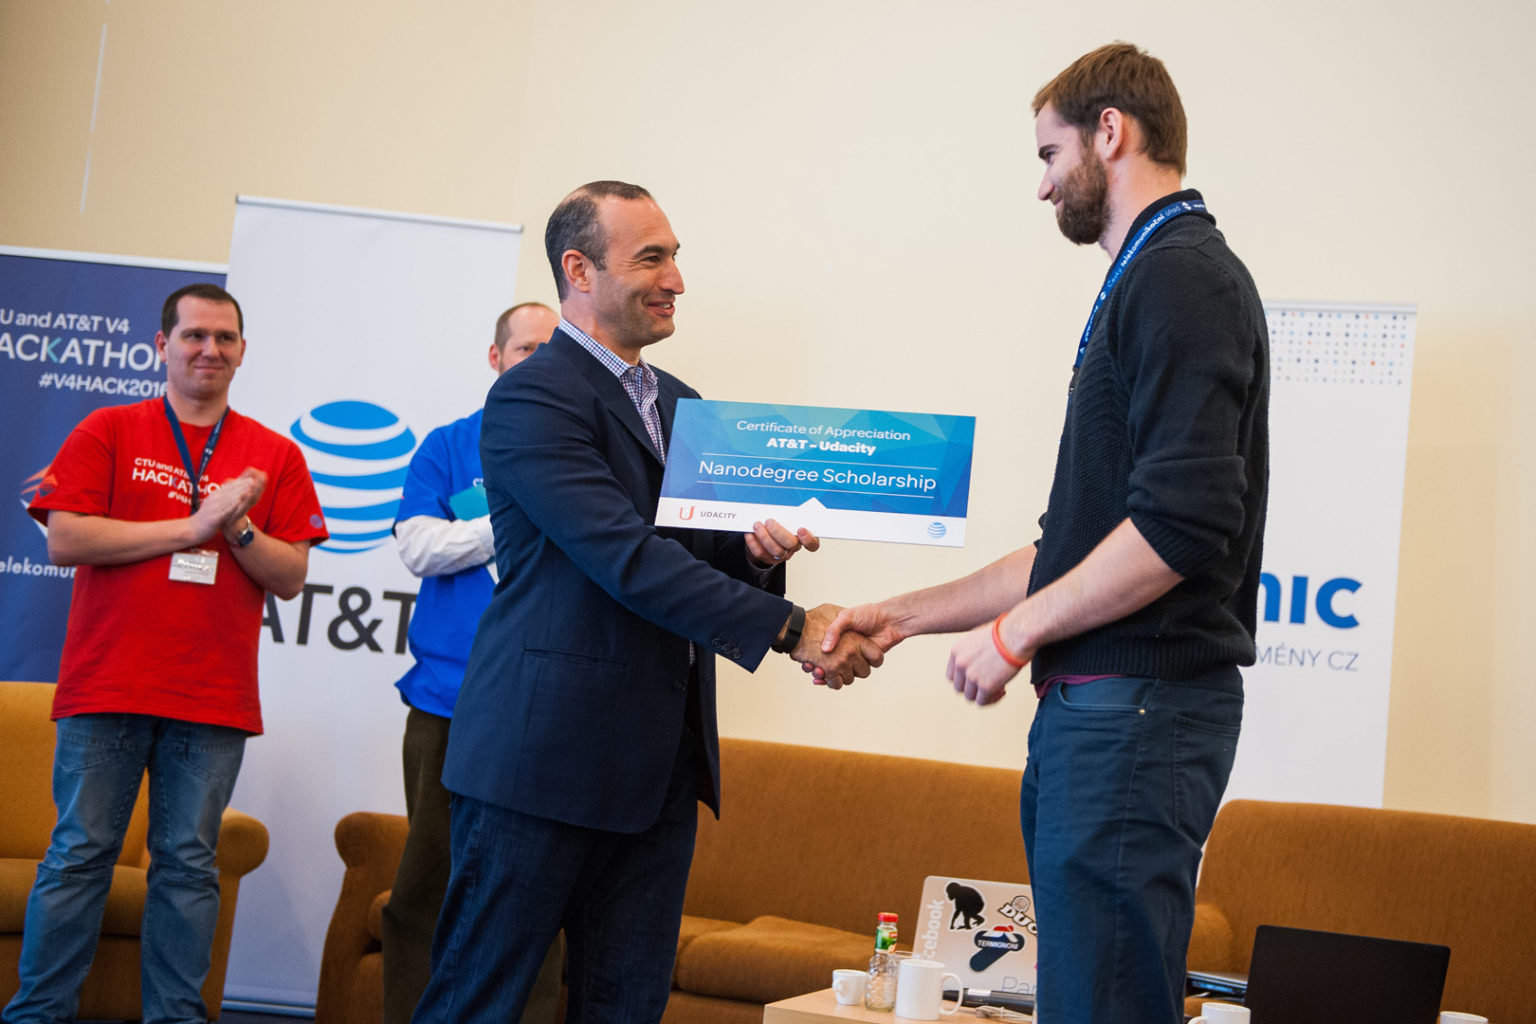 V4 Hackathon Prague 2016